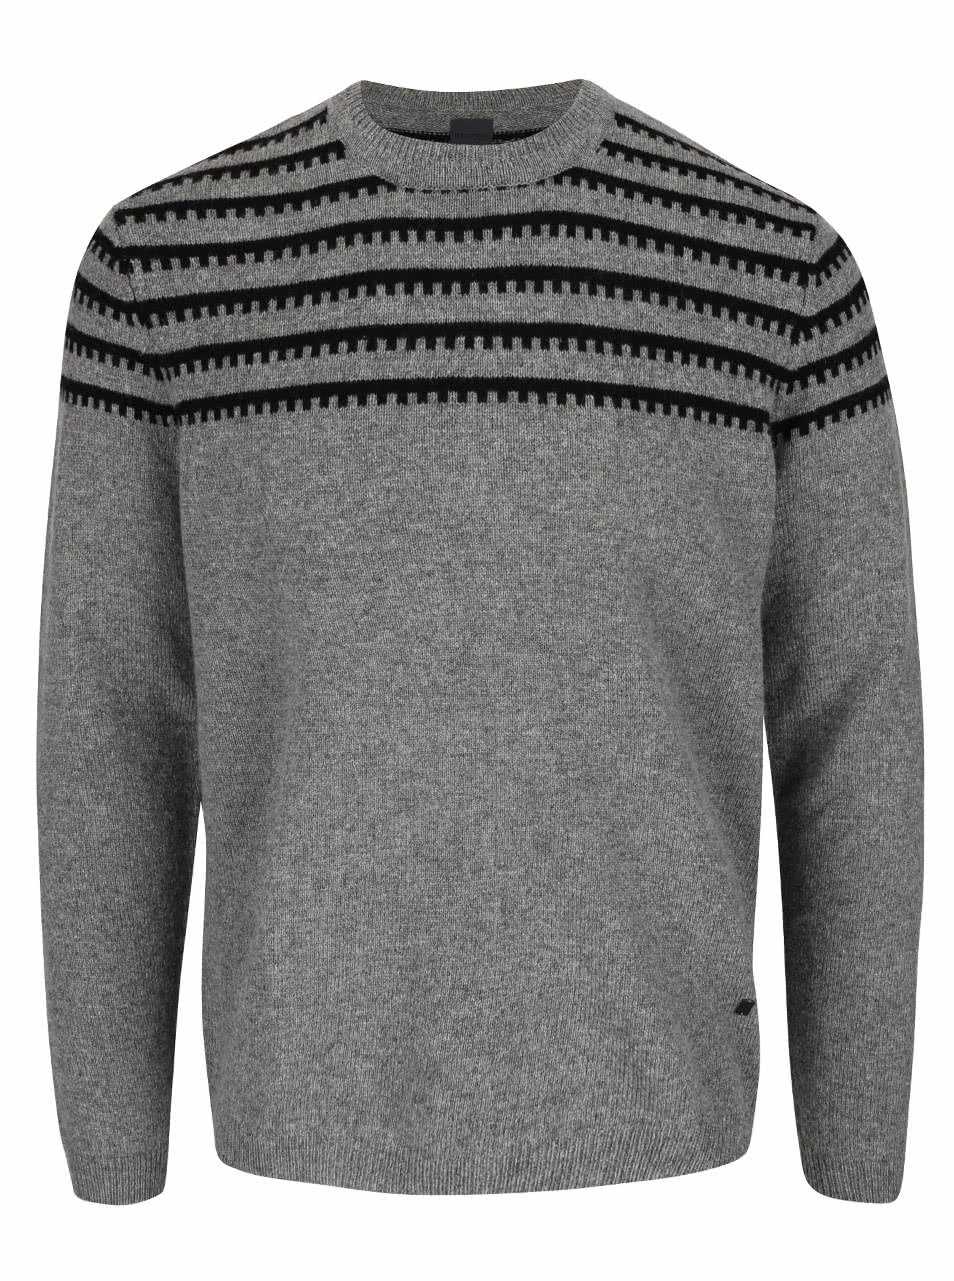 Šedý vlněný svetr s černým vzorem Bertoni Steen